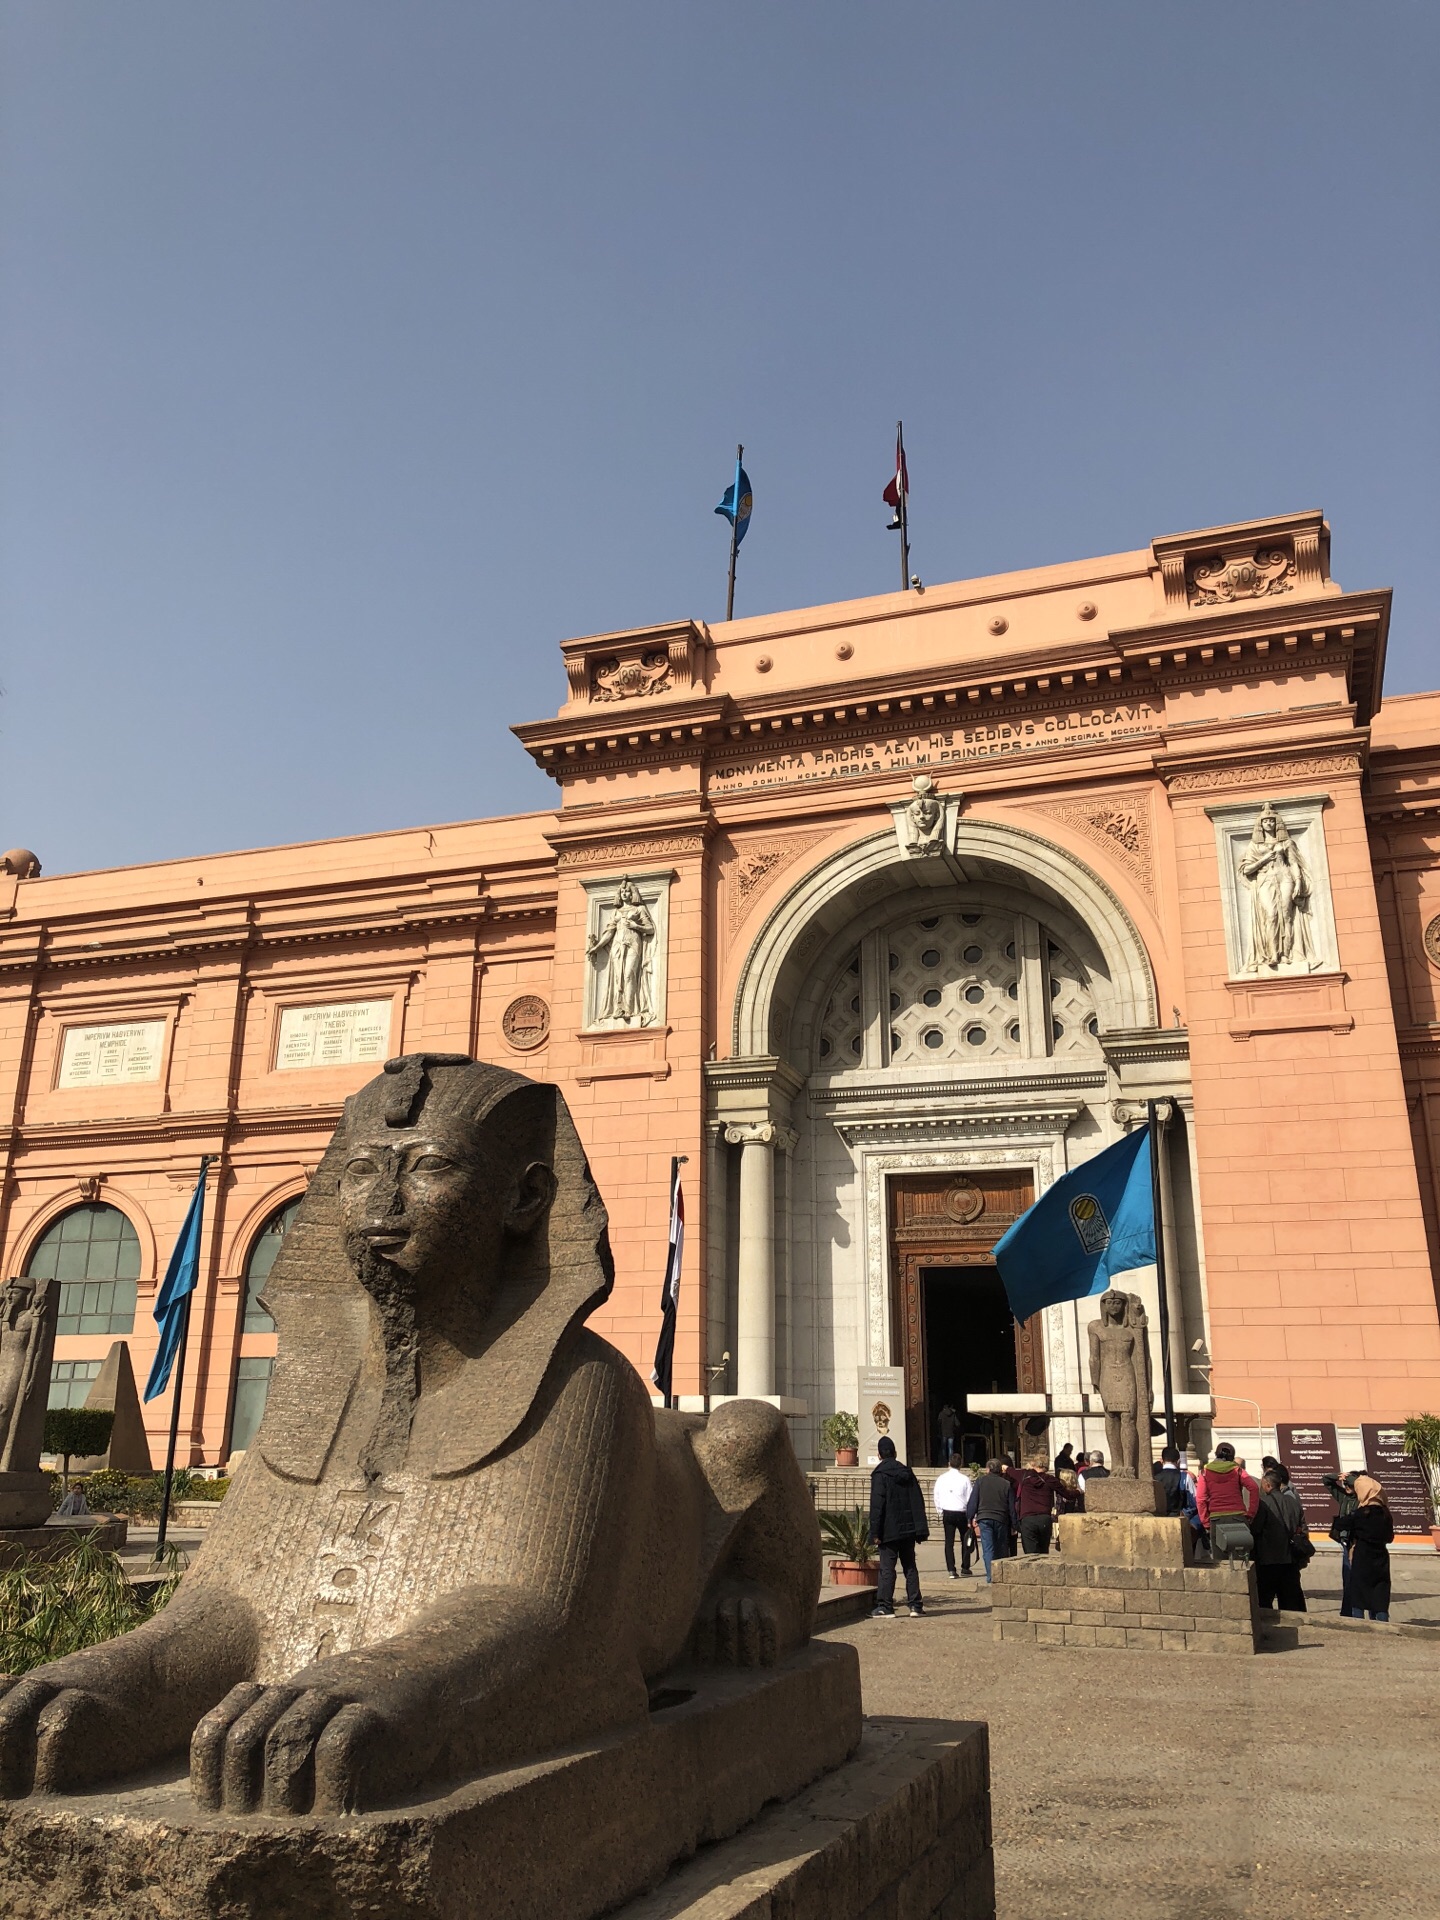 开罗埃及博物馆攻略,开罗埃及博物馆门票/游玩攻略/地址/图片/门票价格【携程攻略】